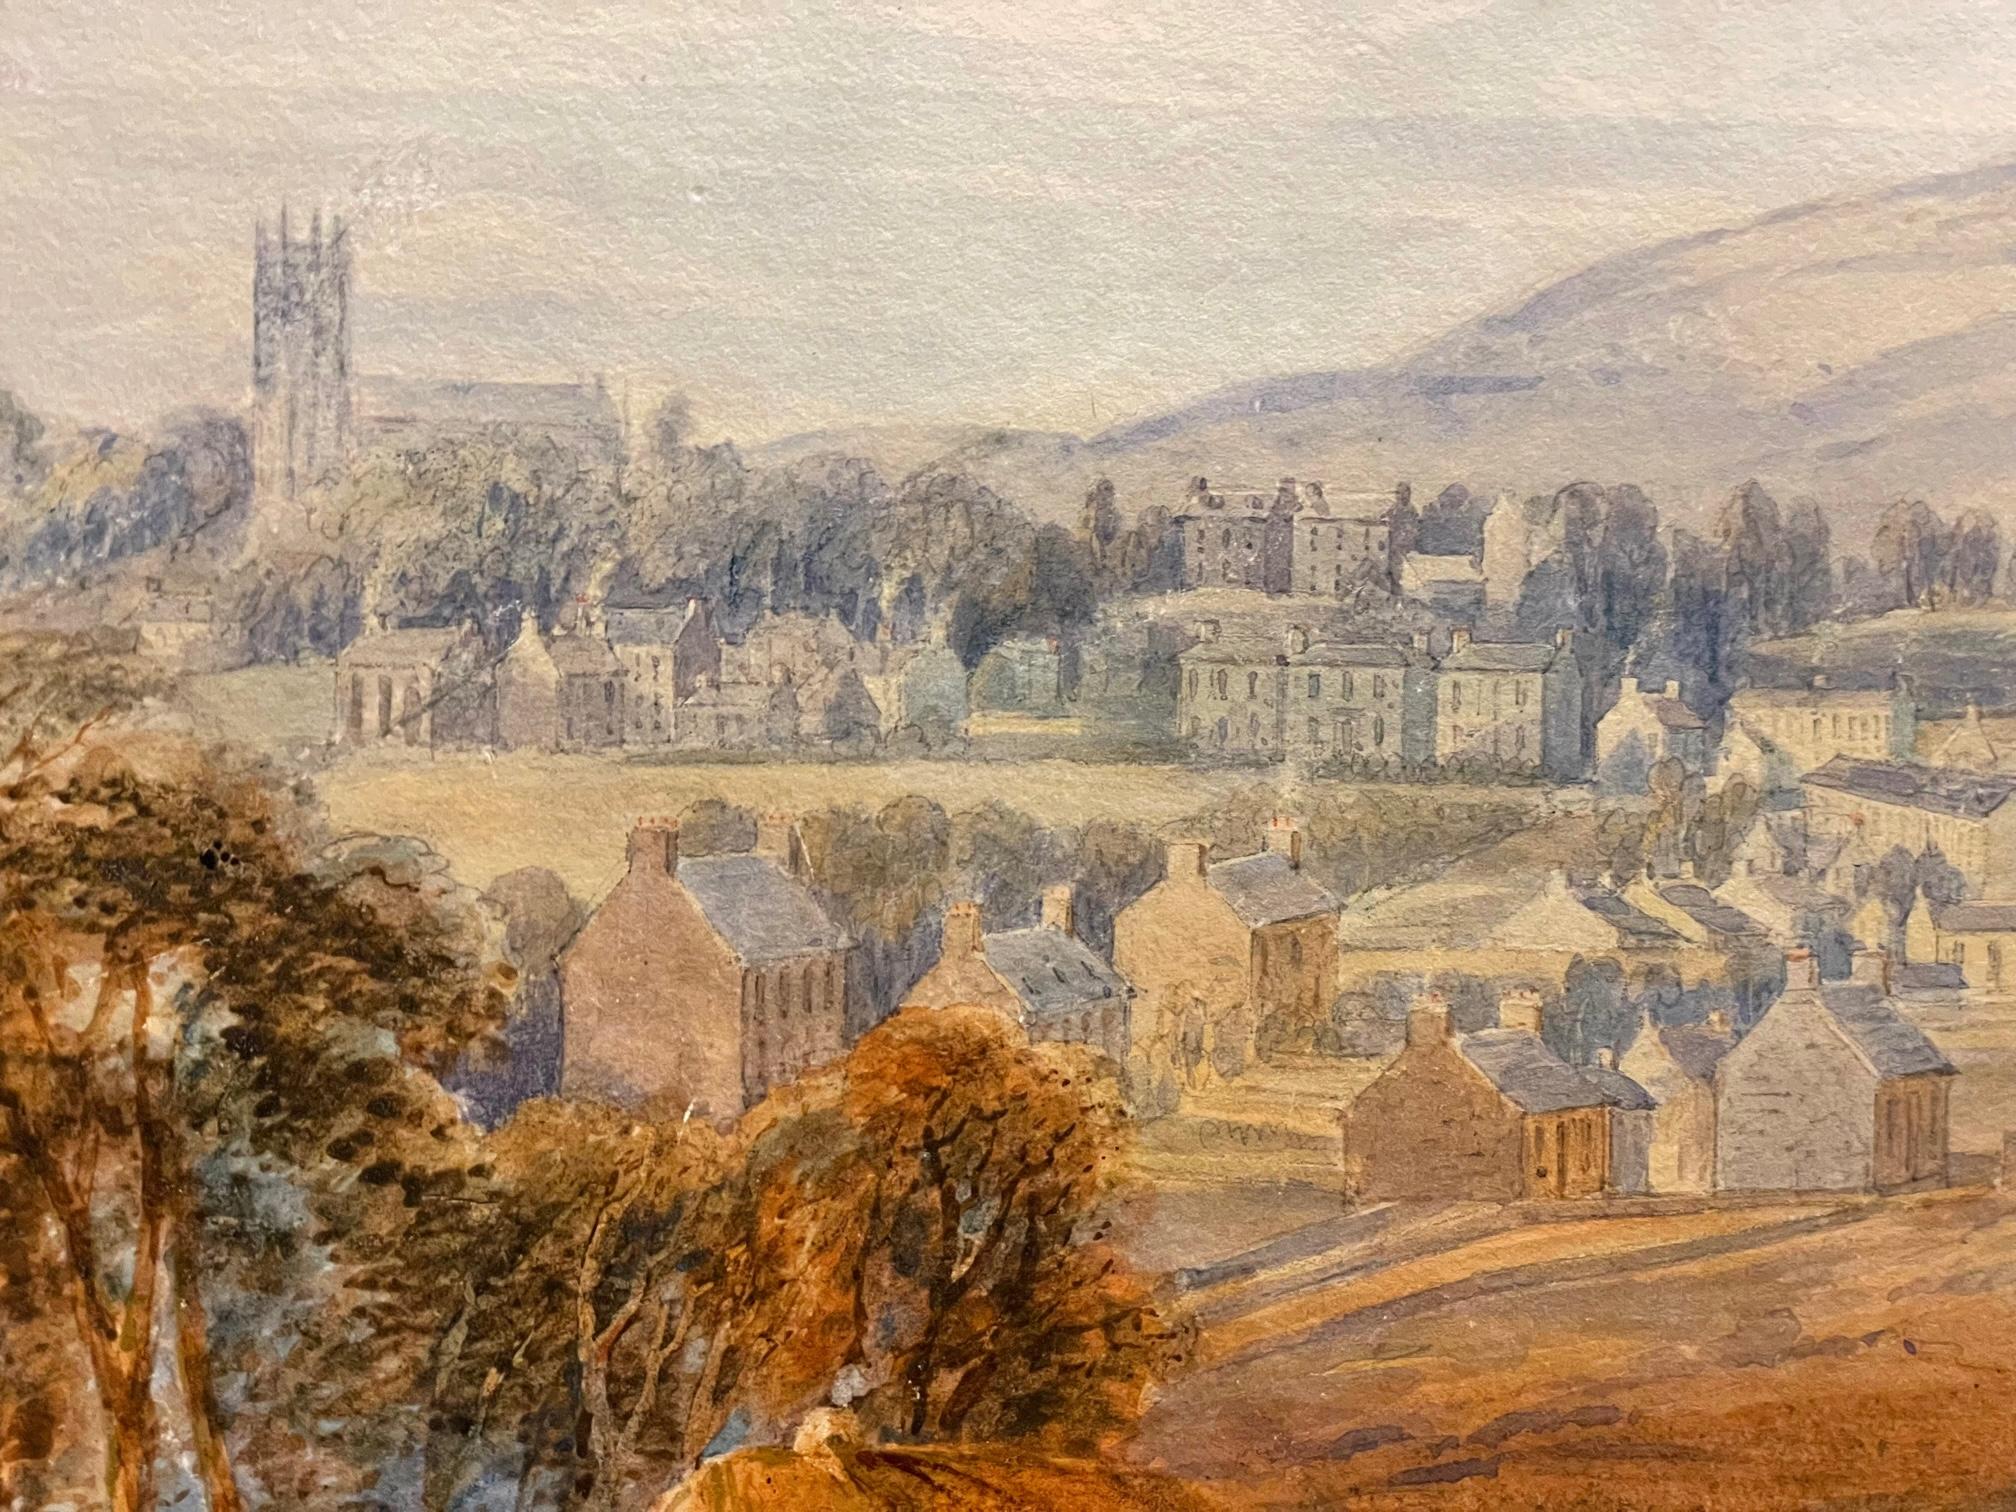 Der schottische Künstler Robert Carrick (1829-1904) ist bekannt für seine Landschafts- und figürlichen Gemälde in Öl und Aquarell.  Dieses Gemälde zeigt detaillierte Zeichnungen von Figuren im Vordergrund mit Wagen und der Stadt und der Landschaft